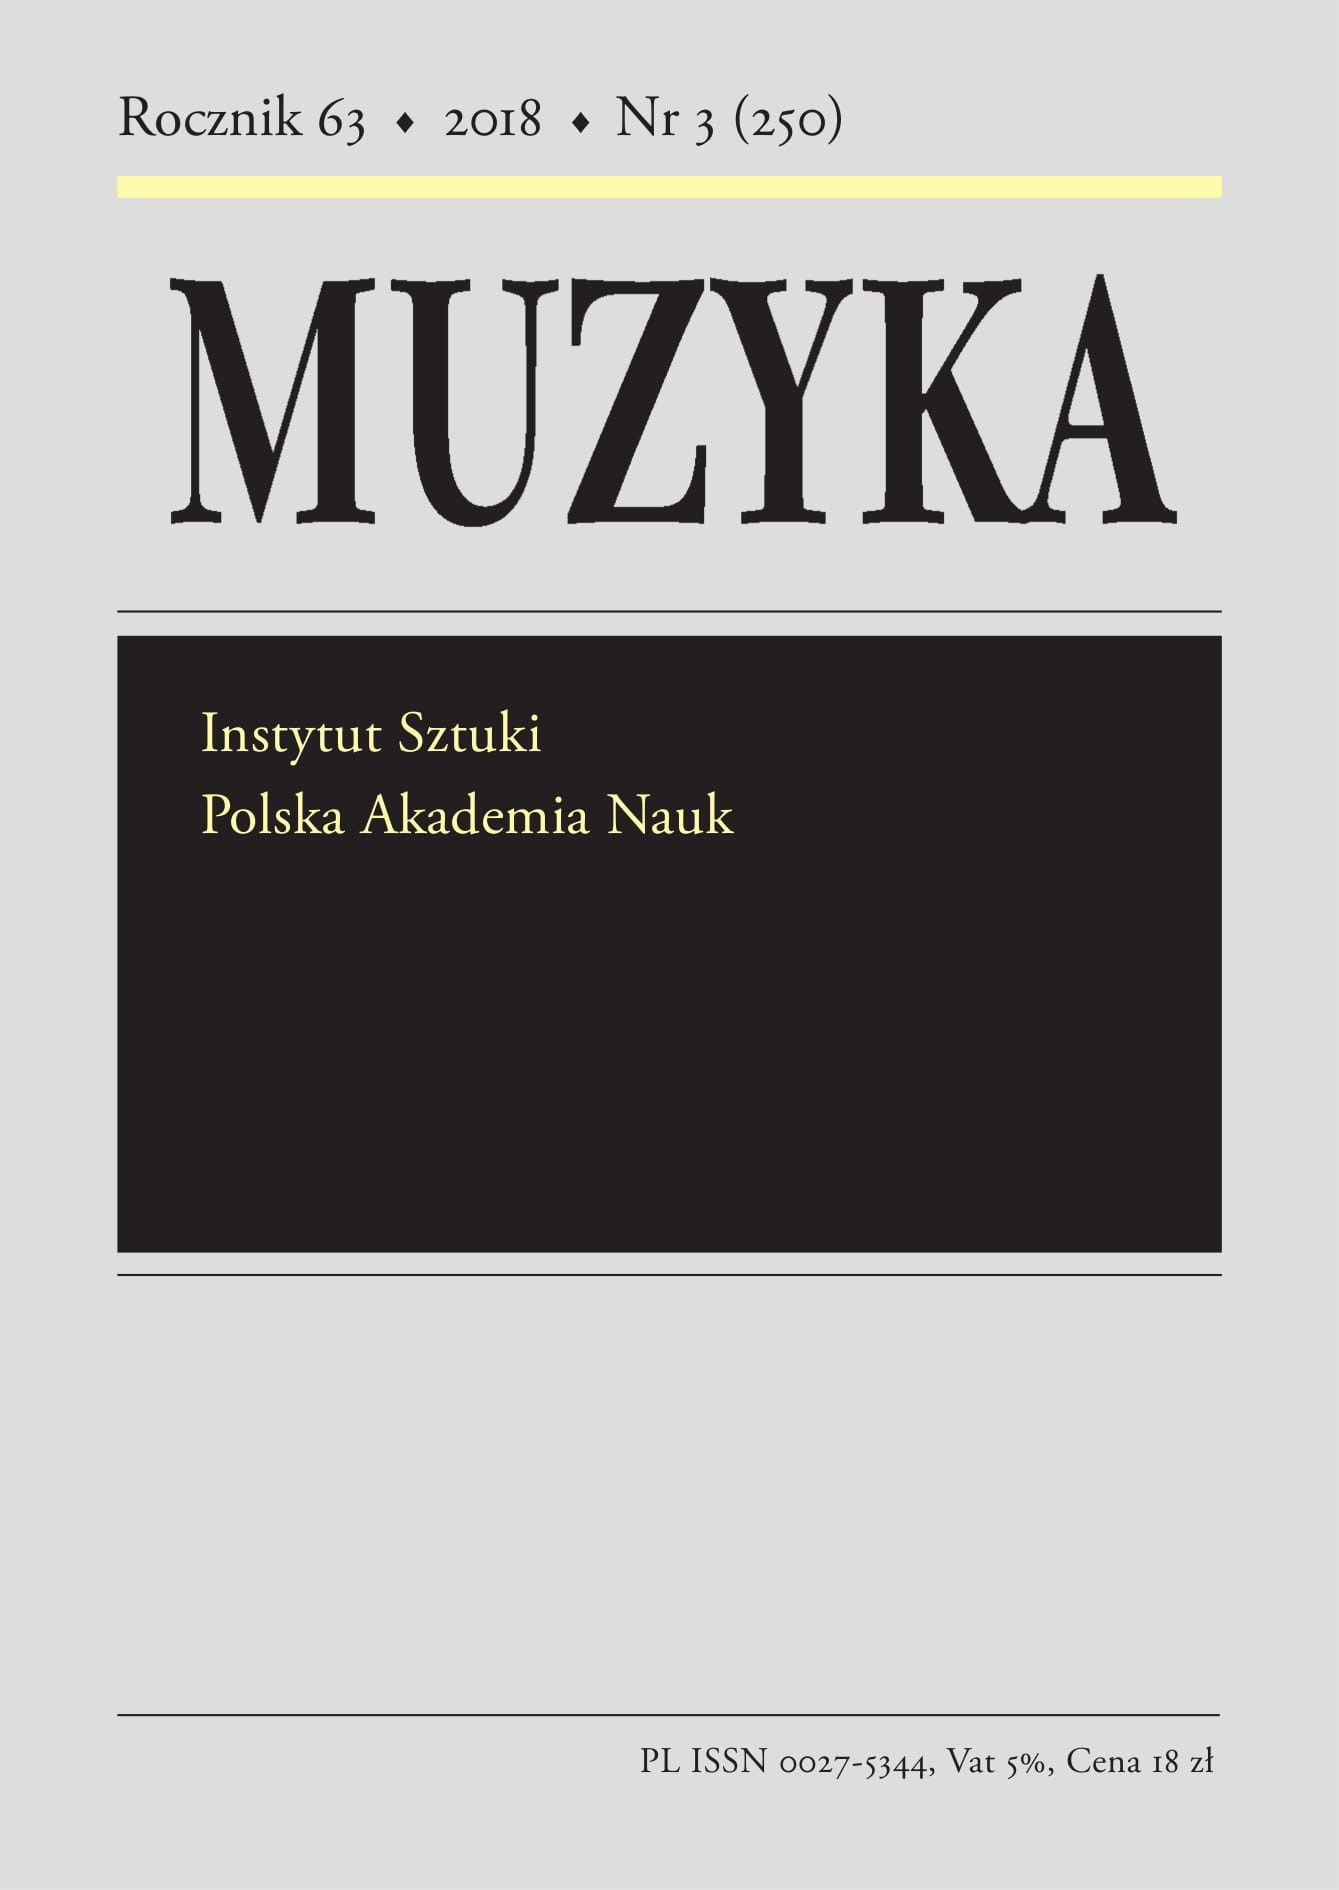 Tradycje śląskiej kultury muzycznej, vol. 14, part. 1–2, ed. Anna Granat-Janki et al., Wrocław 2017 Cover Image